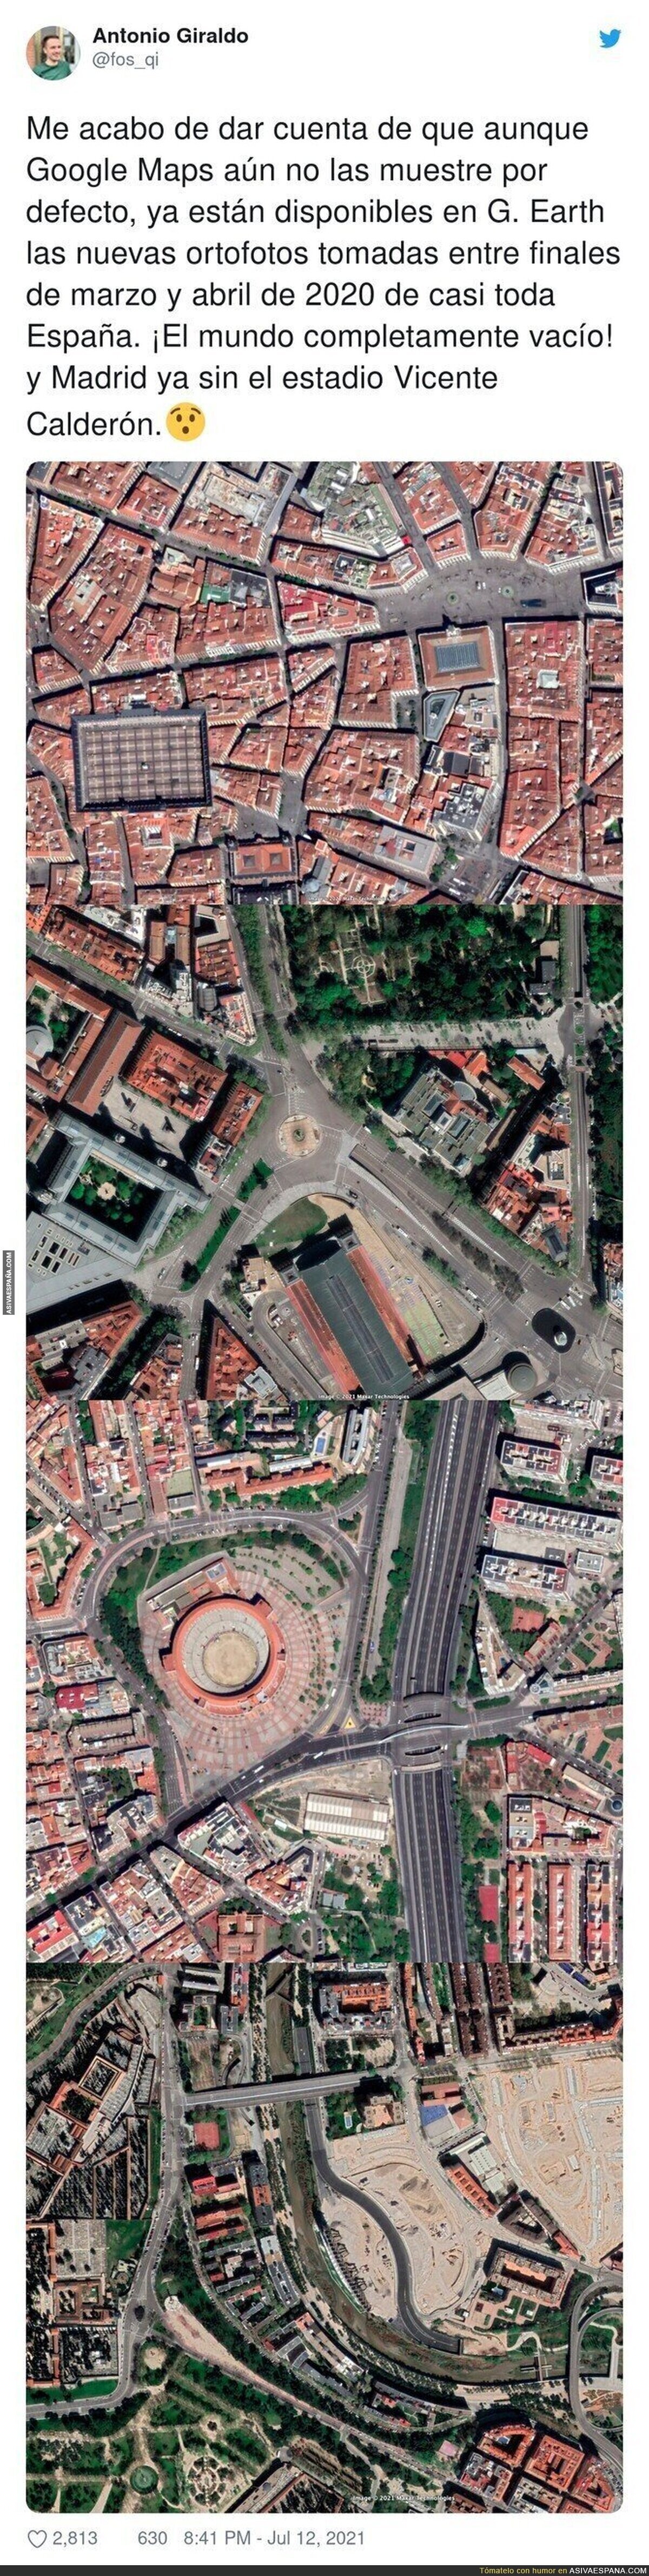 Una España vacía ya en Google Maps